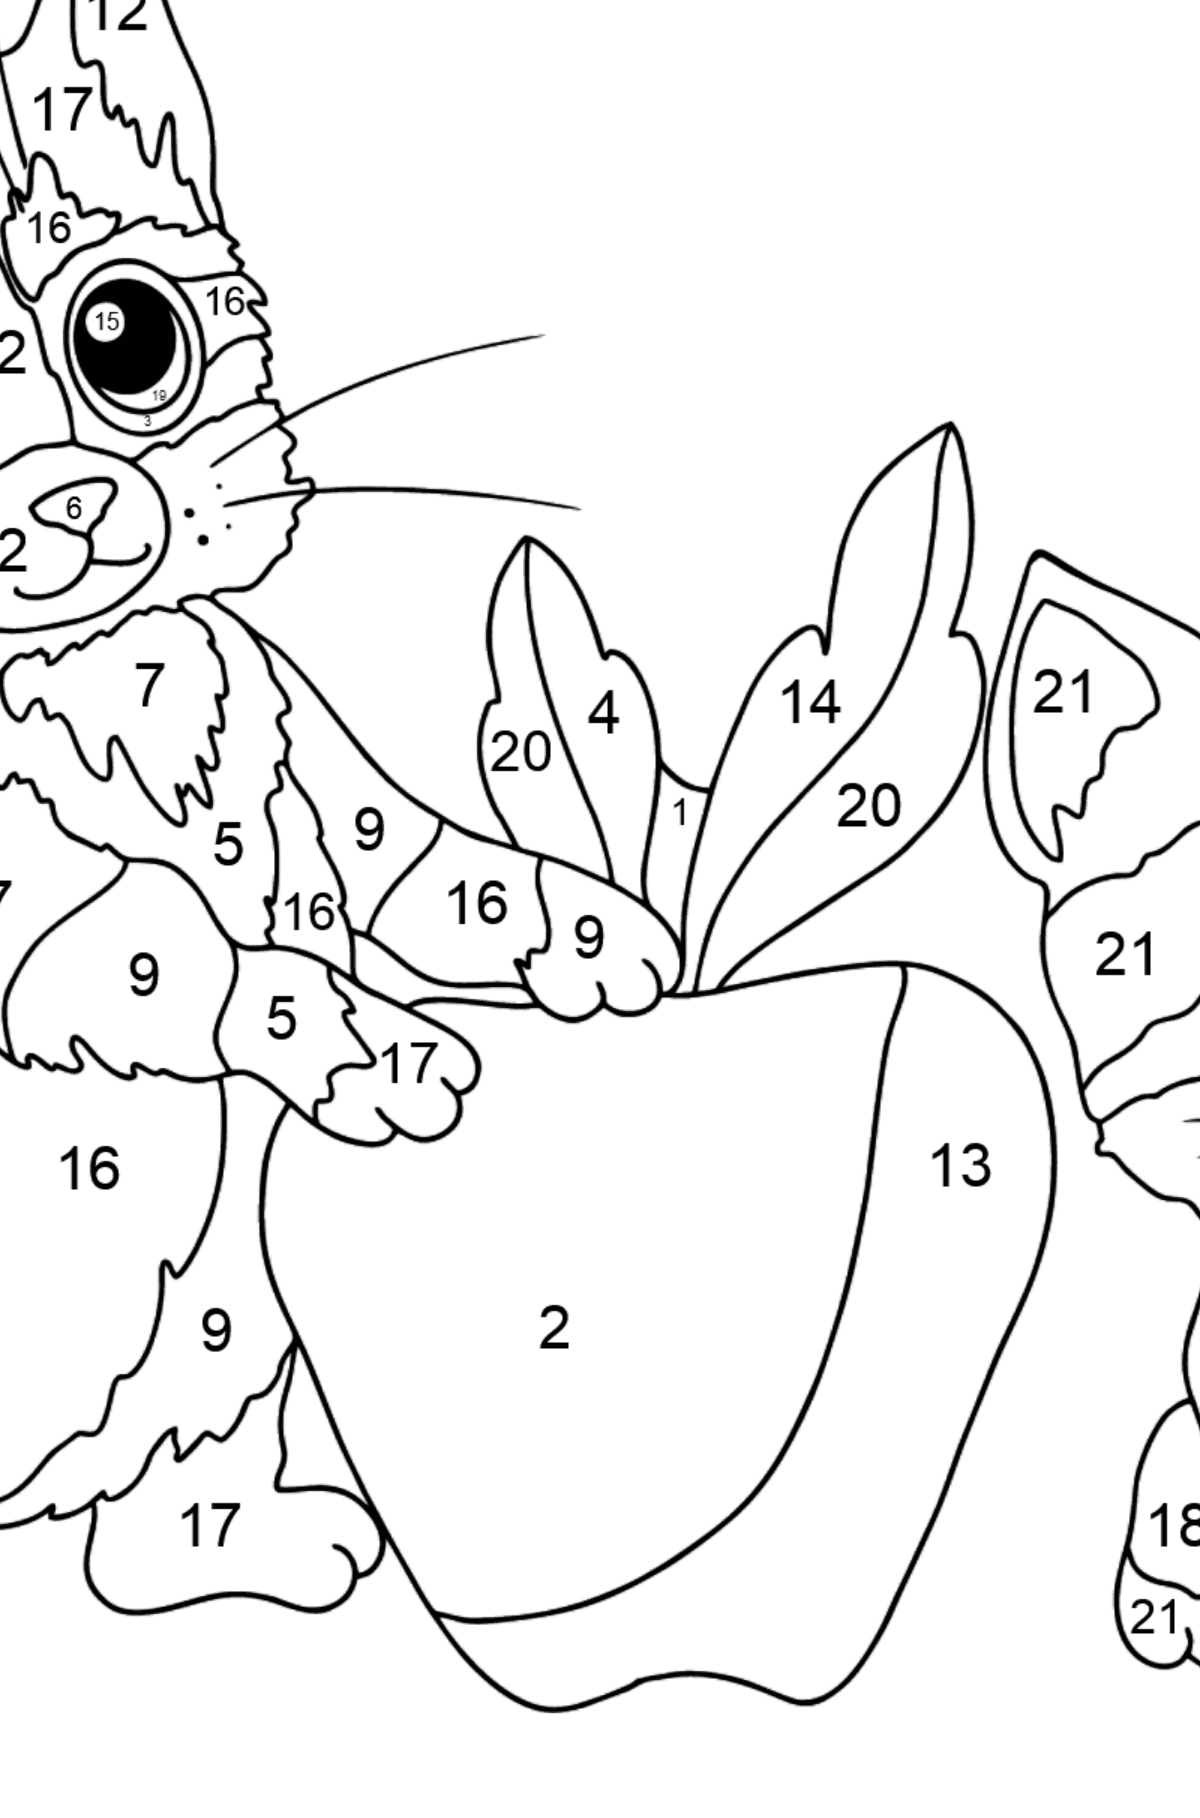 Desen de colorat pisoi jucăuși (dificil) - Desen de colorat după Număr pentru copii